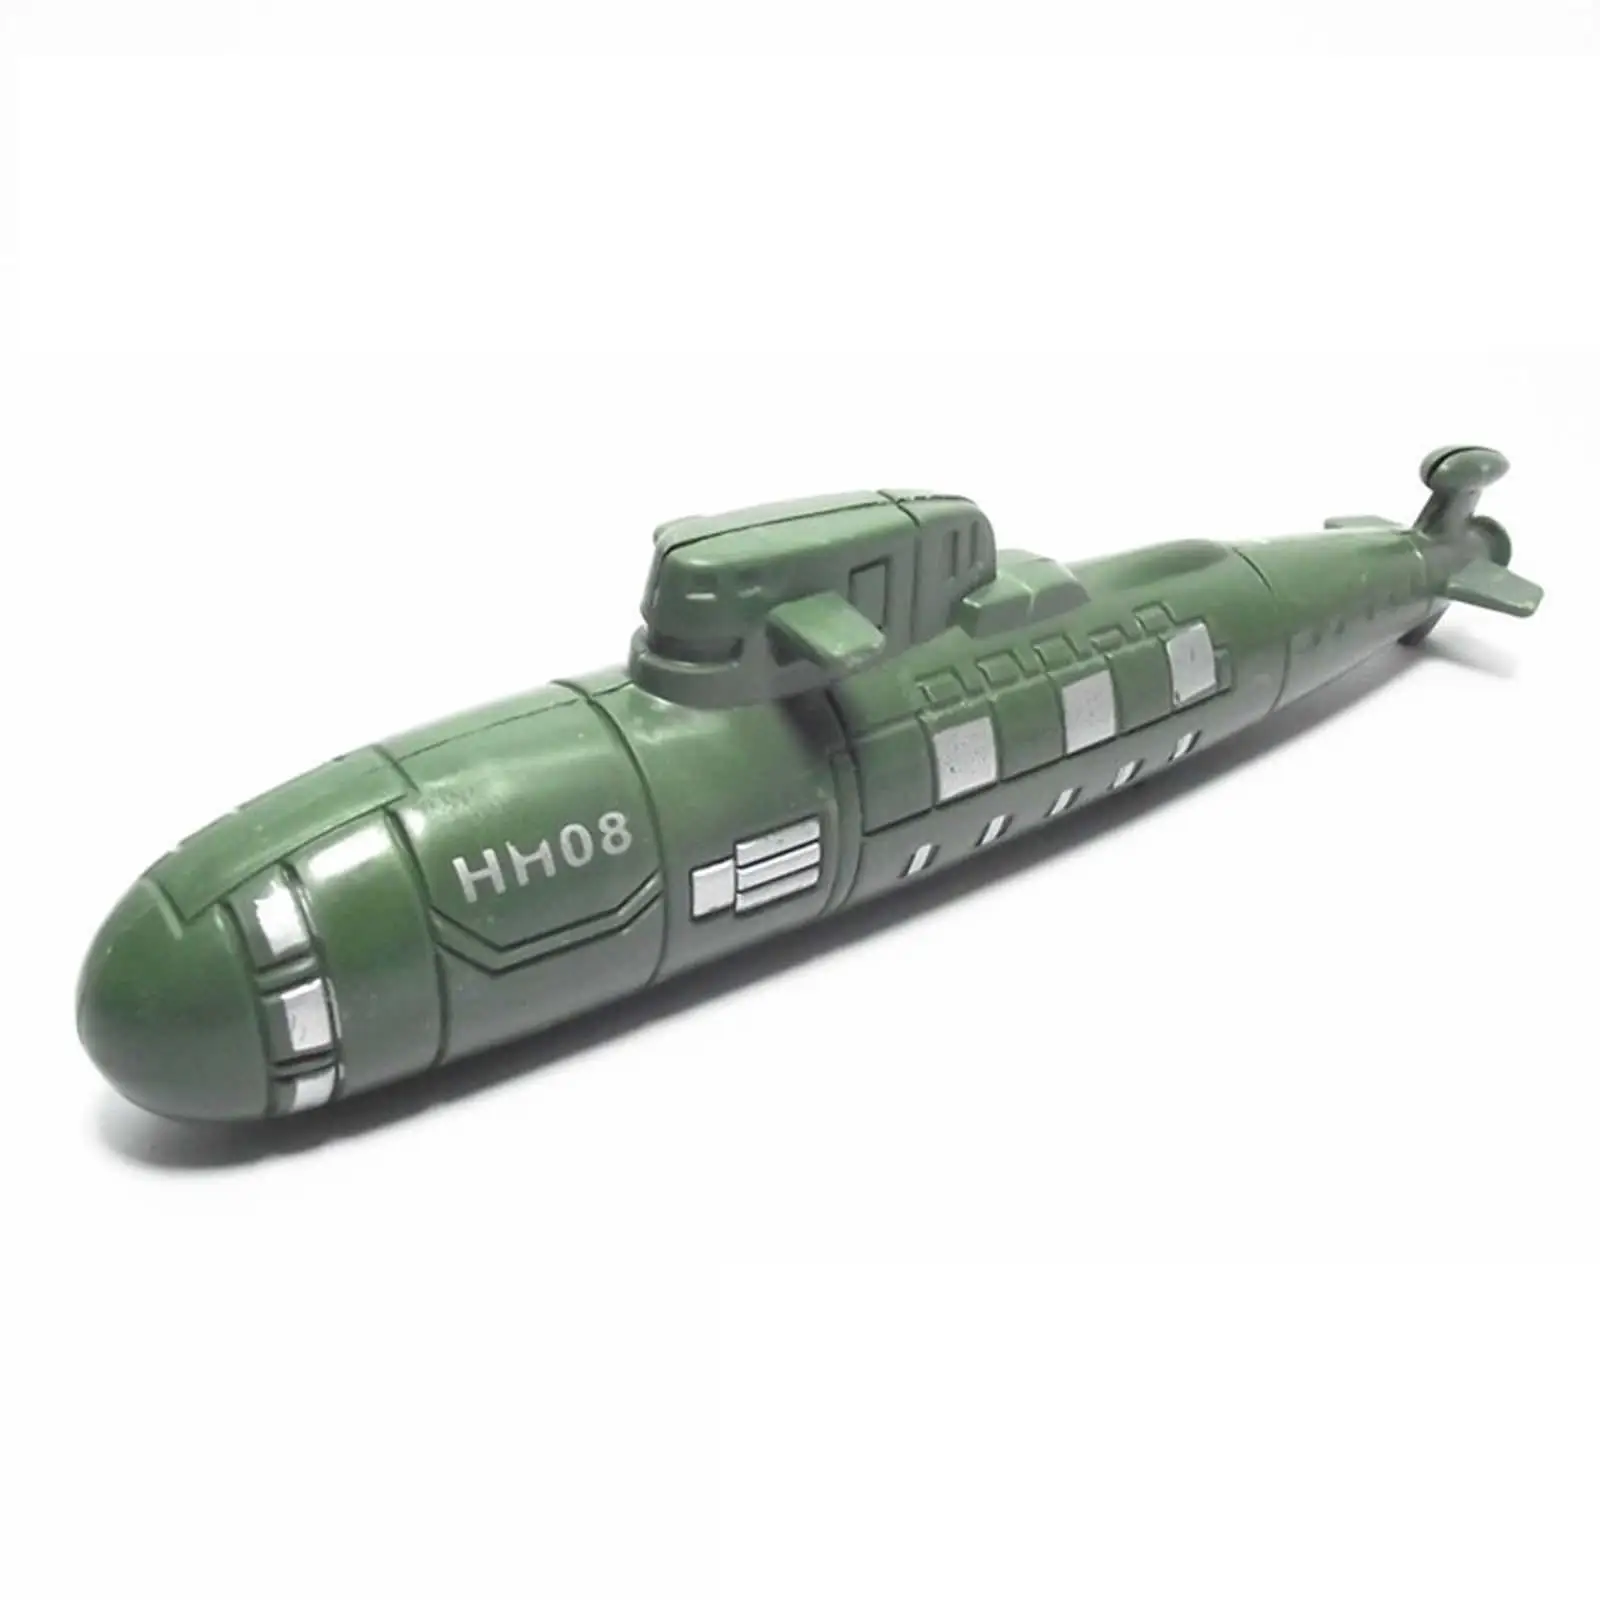 

8 шт. игрушечный корабль, игровой набор, модель спасательной лодки, обучающая игрушка, военный корабль, игровой набор, водная модель, игрушки для искусственных сувениров для девочек, мальчиков и детей